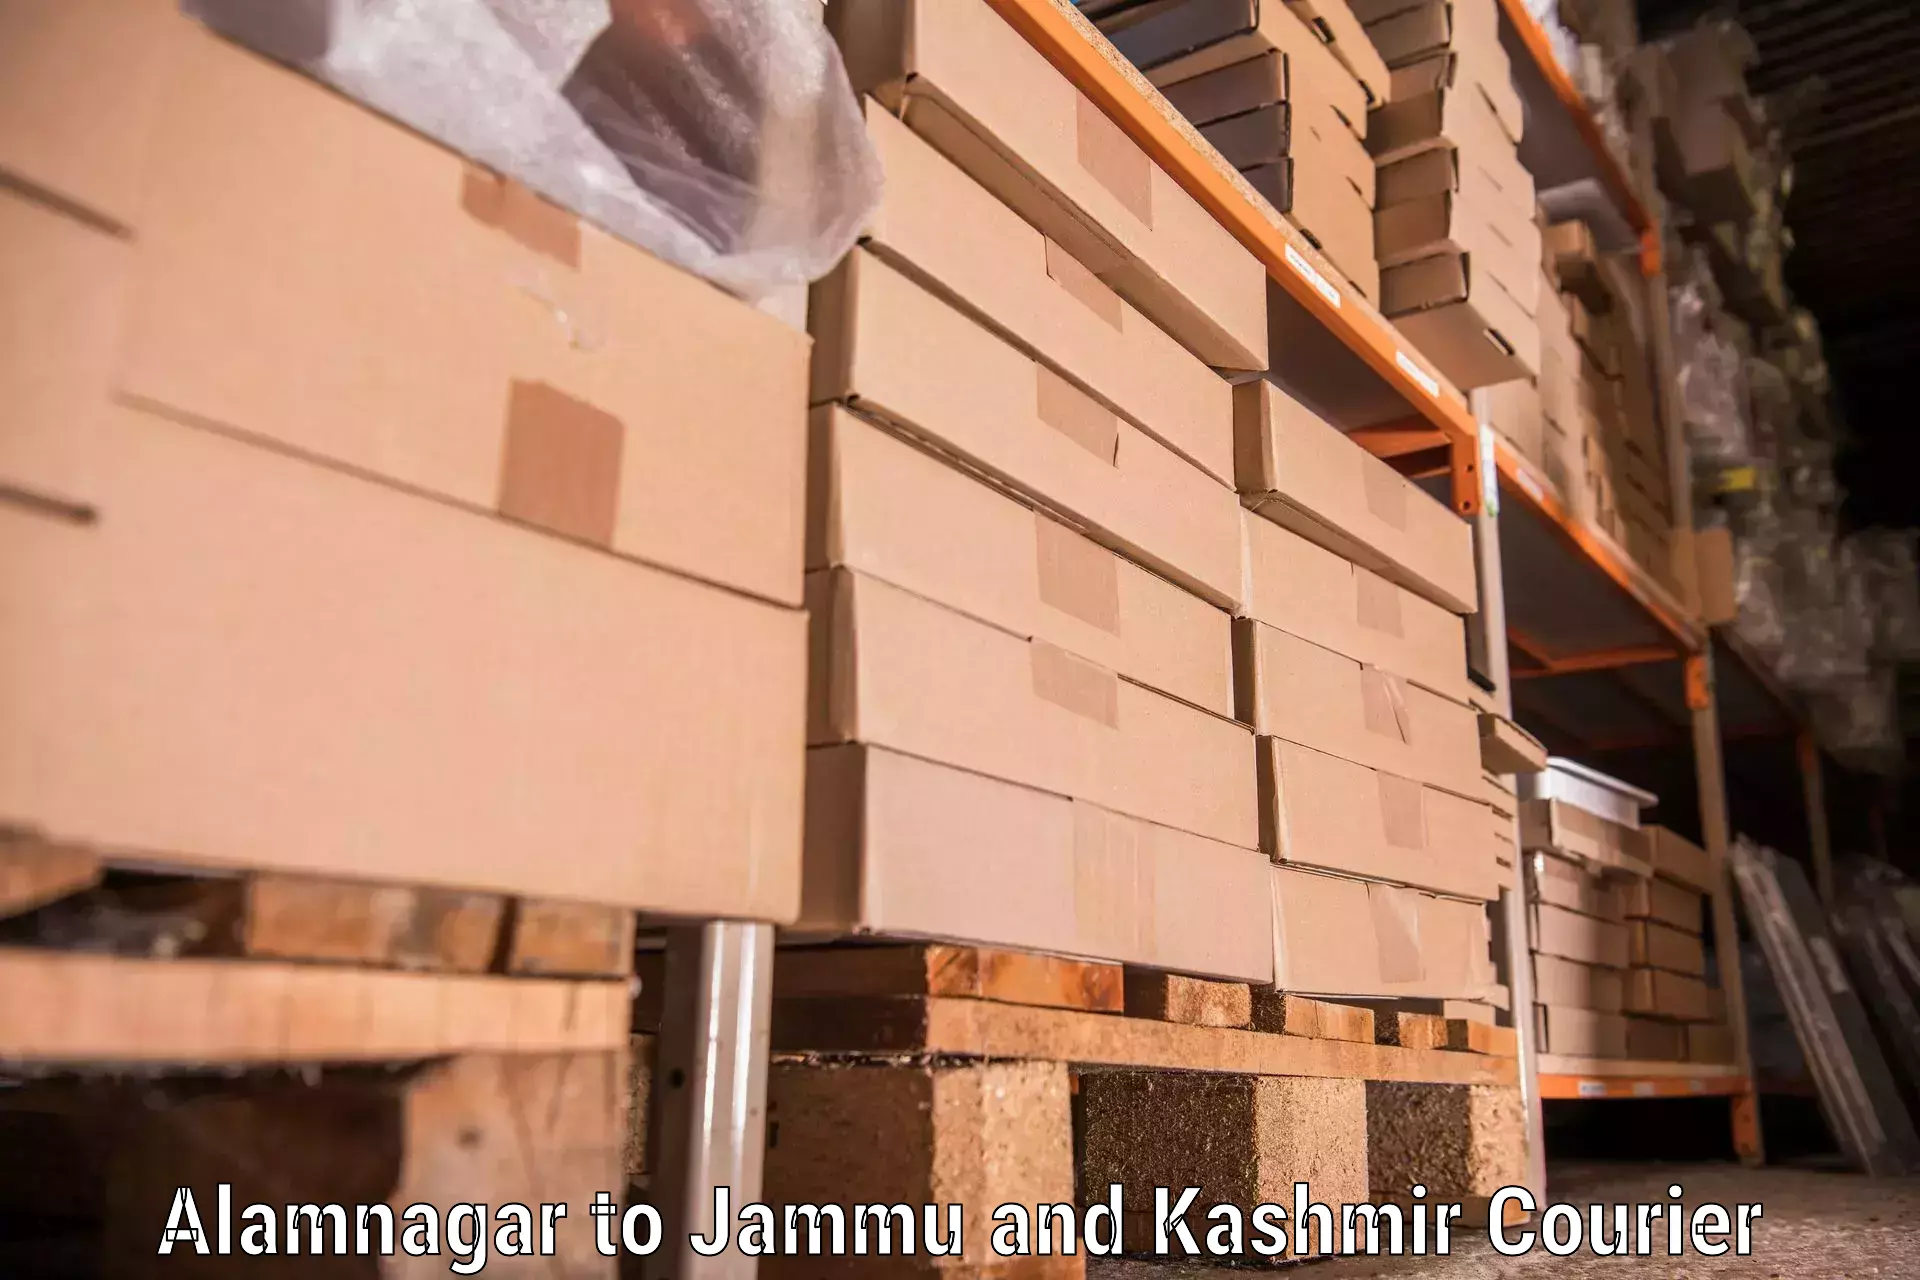 Efficient furniture movers Alamnagar to Bohri